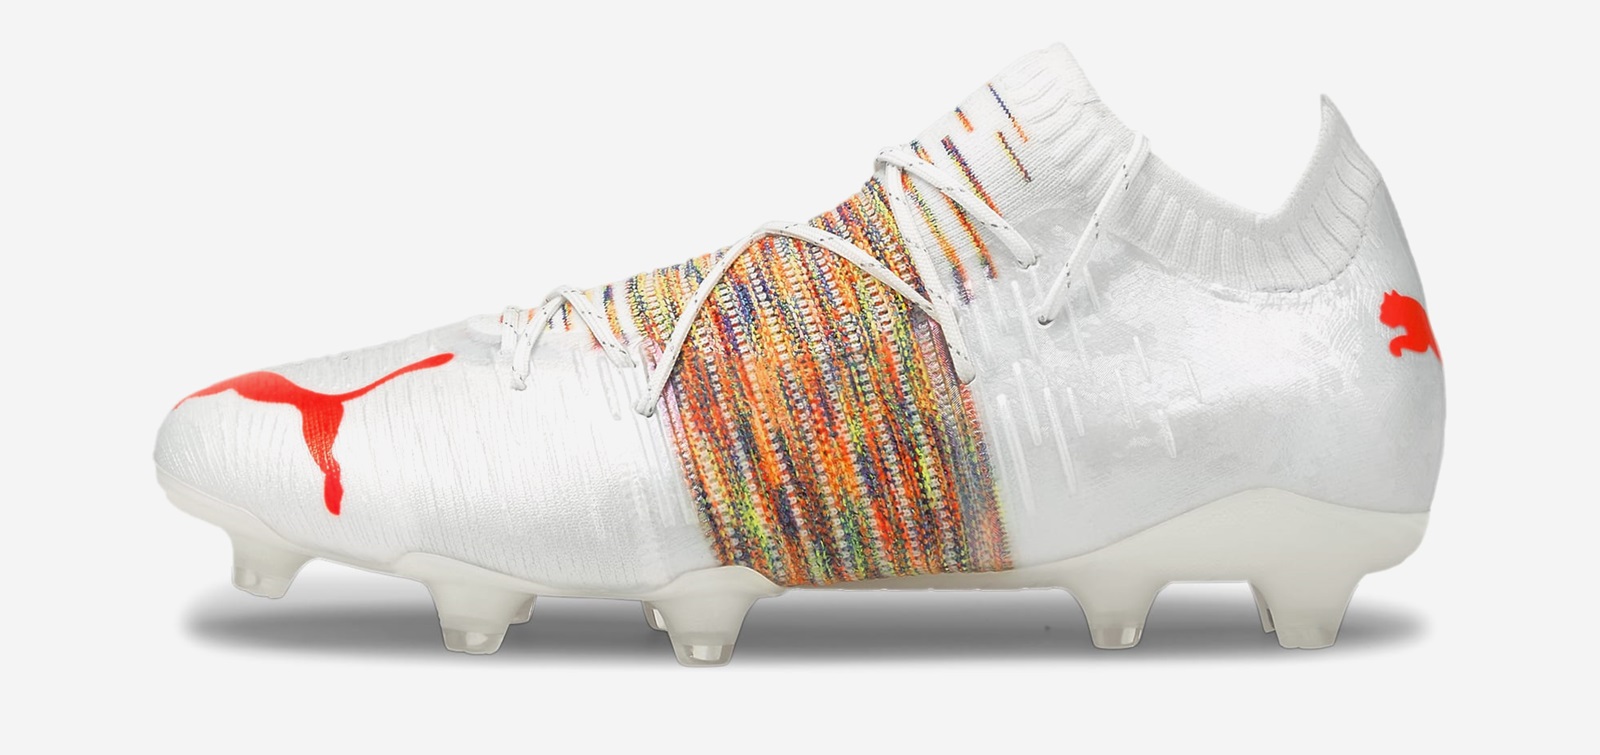 neymar soccer boots 2019